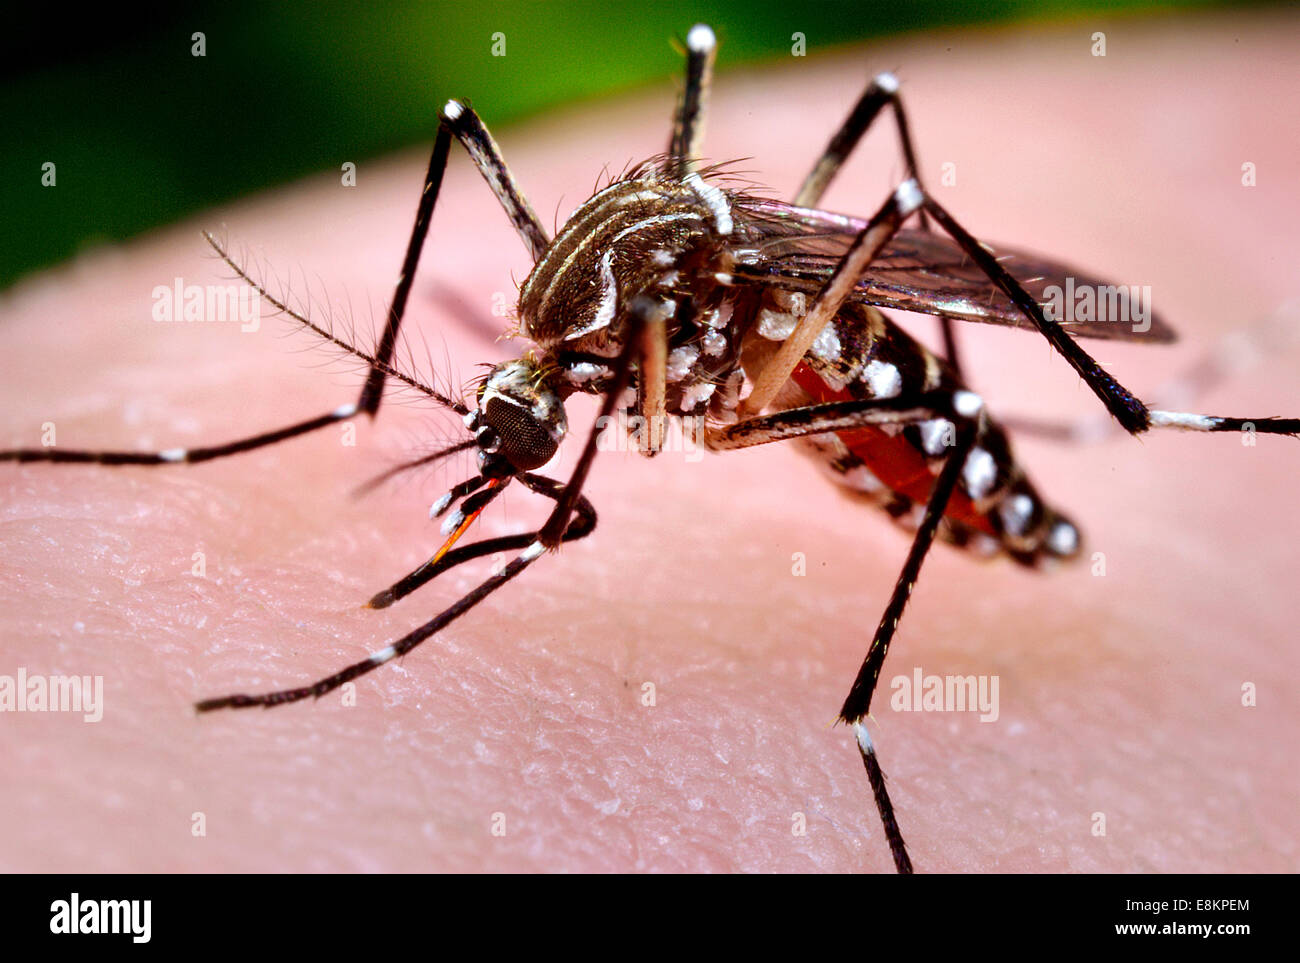 Dieses Foto abgebildeten weiblichen Aedes Aegypti Mücke war, während sie im Prozess der Blutmahlzeit aus ihrem menschlichen Wirt zu erwerben, Stockfoto